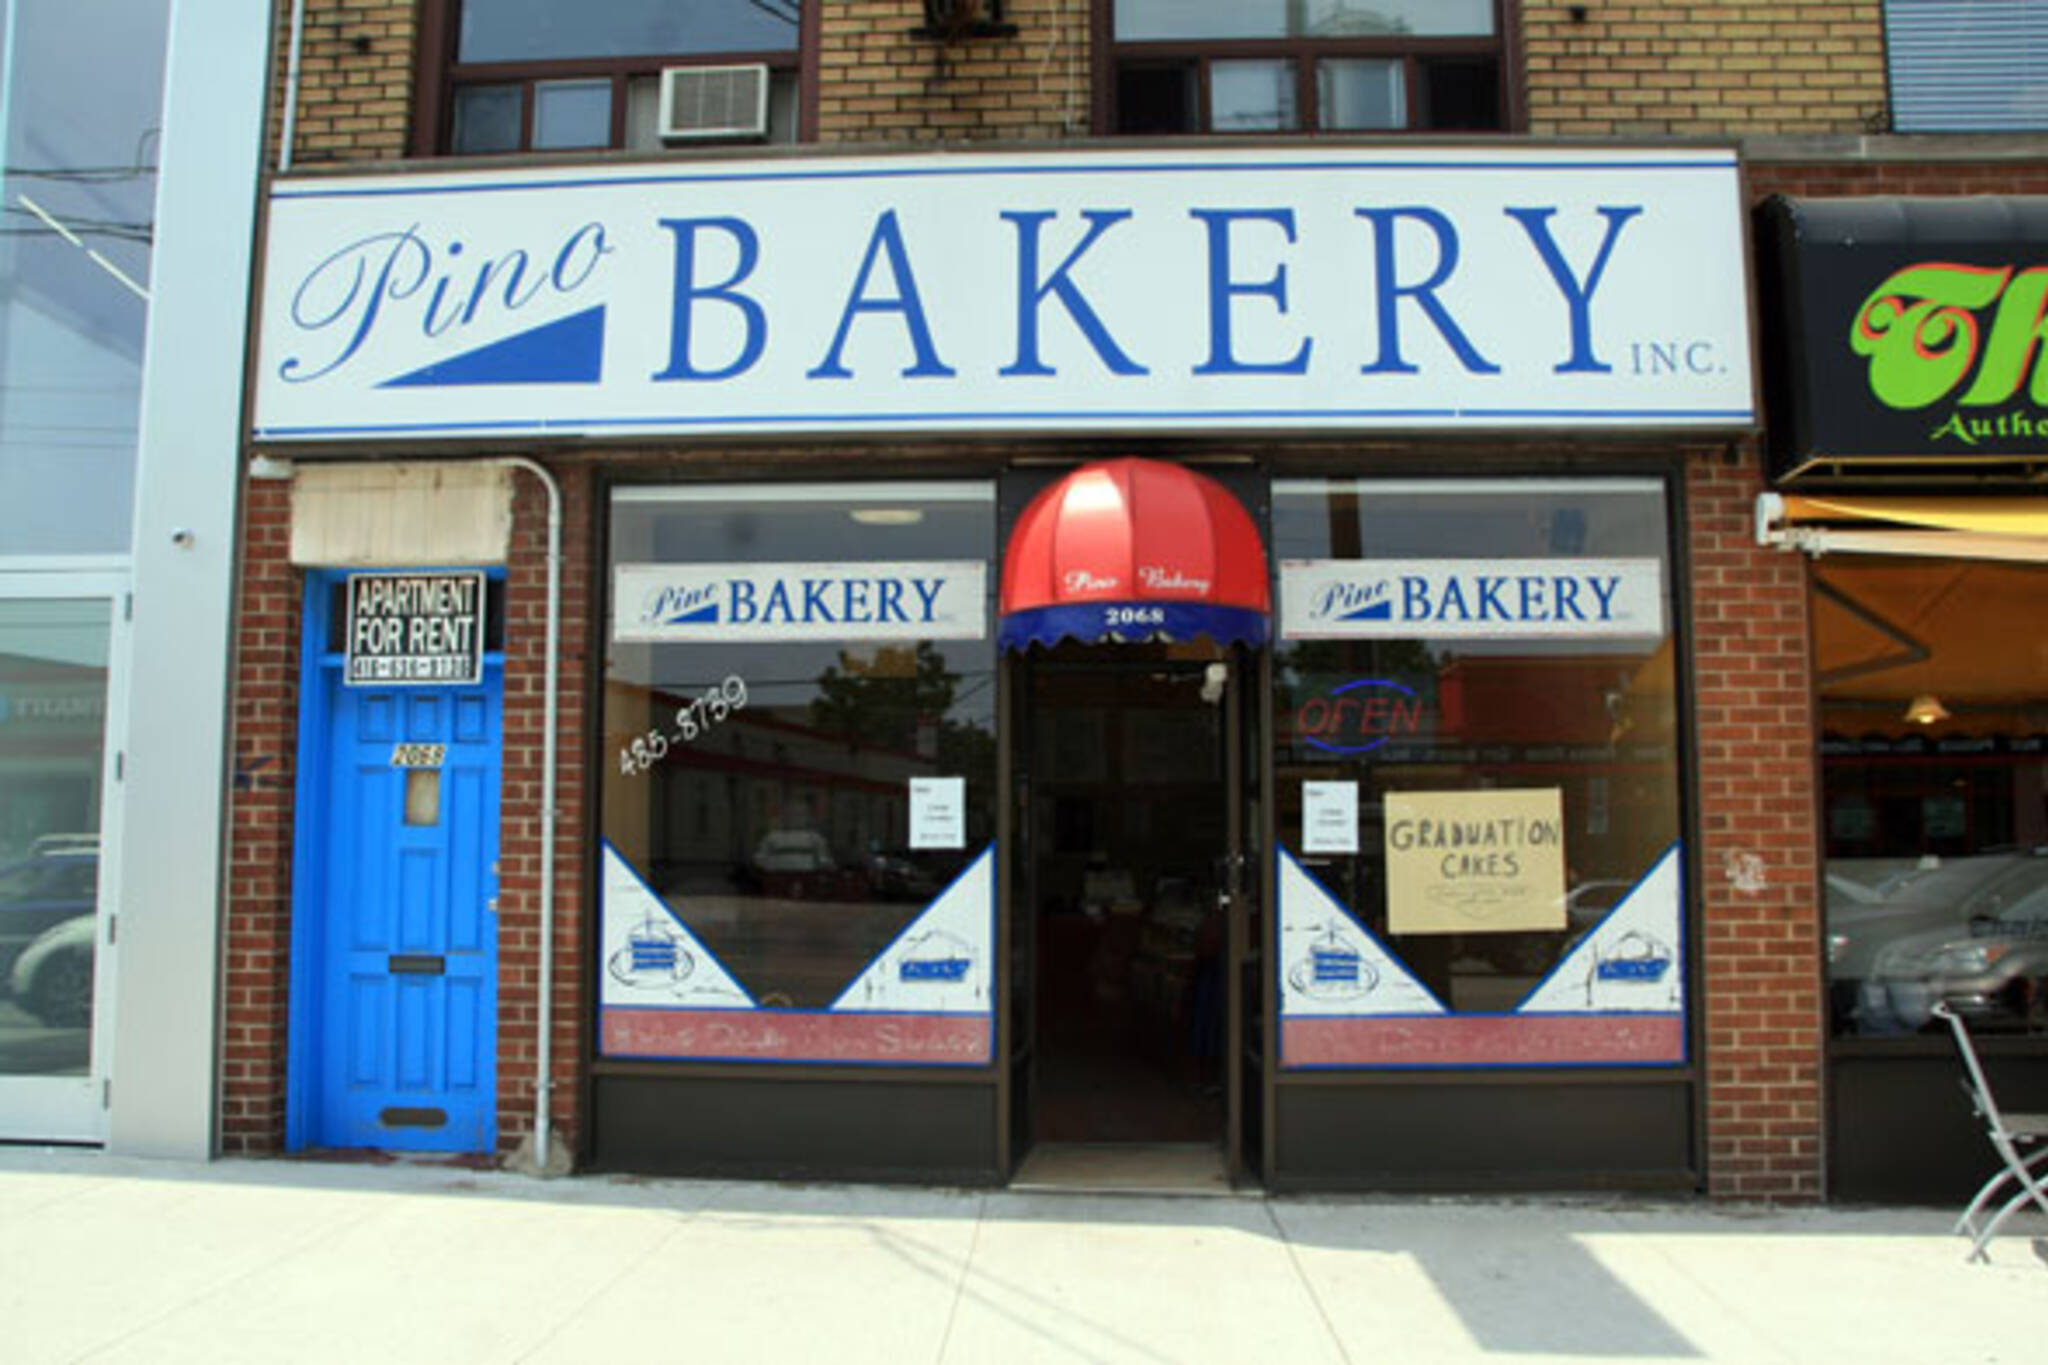 Pino Bakery